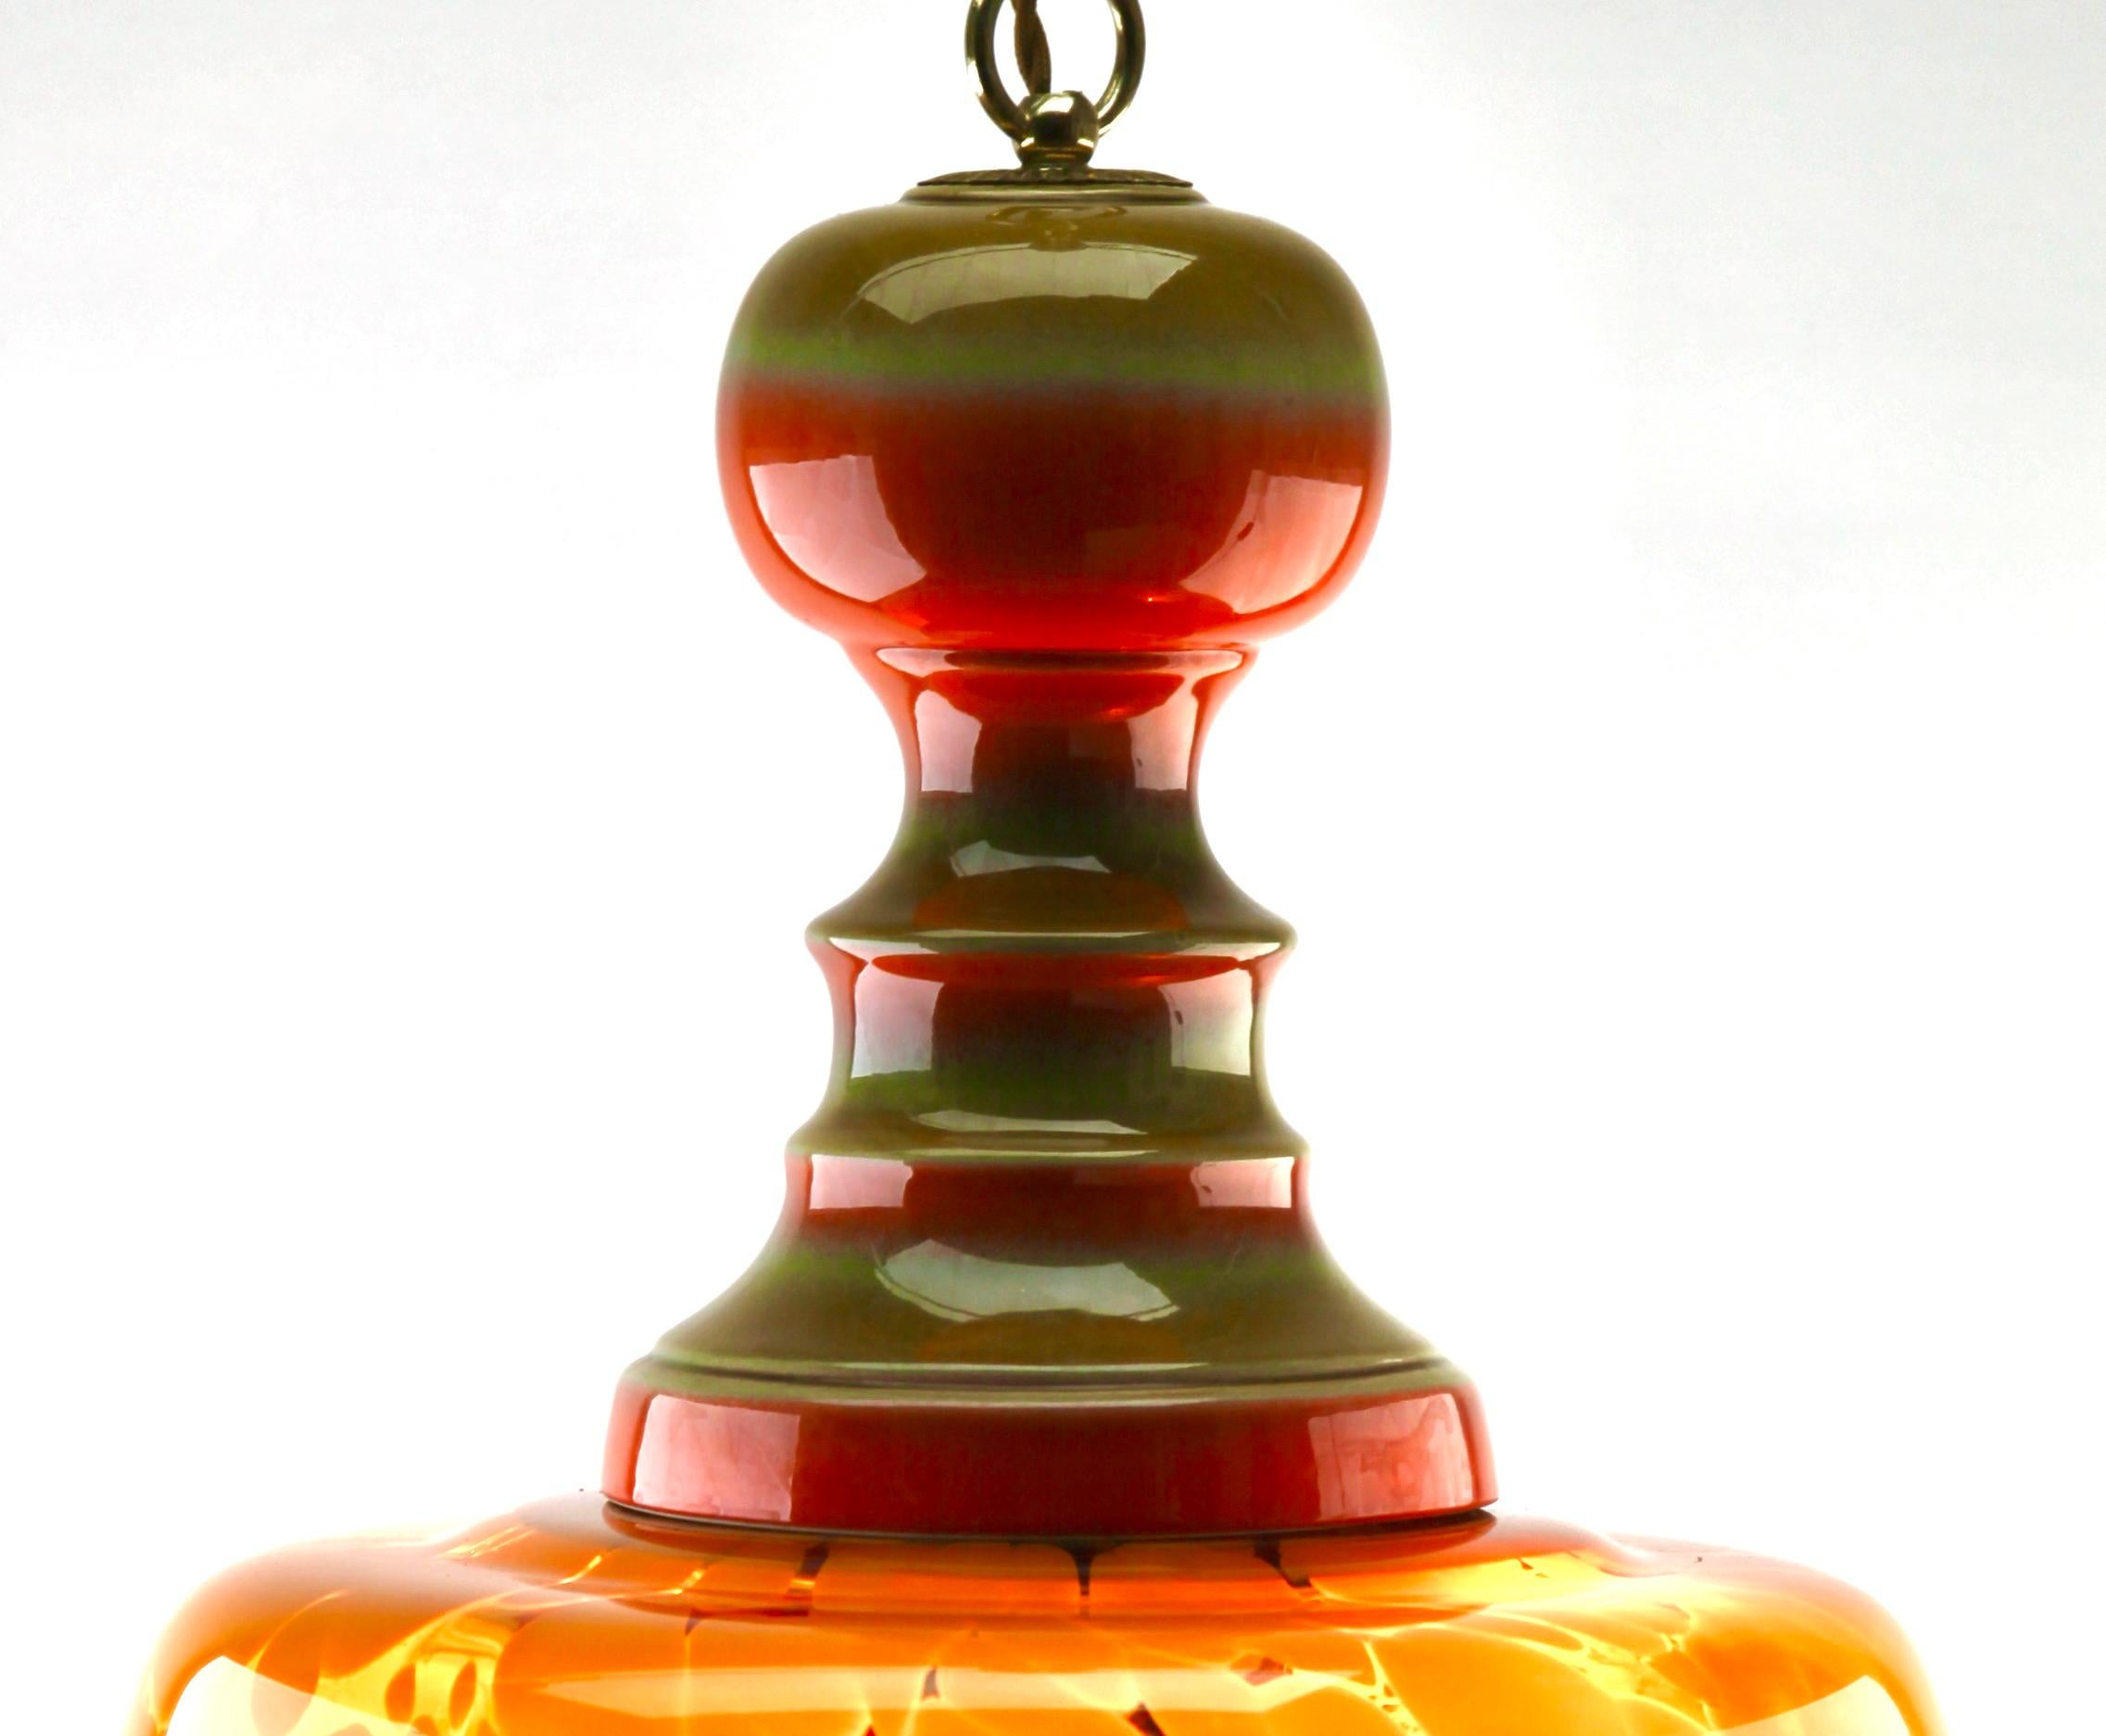 Lampe pendante de Murano du milieu du siècle, abat-jour en verre de différentes couleurs 

Suspension de la fin des années 1960 sur une chaîne réglable, conçue dans le style Murano avec une monture en céramique et un abat-jour opalin. Sa forme